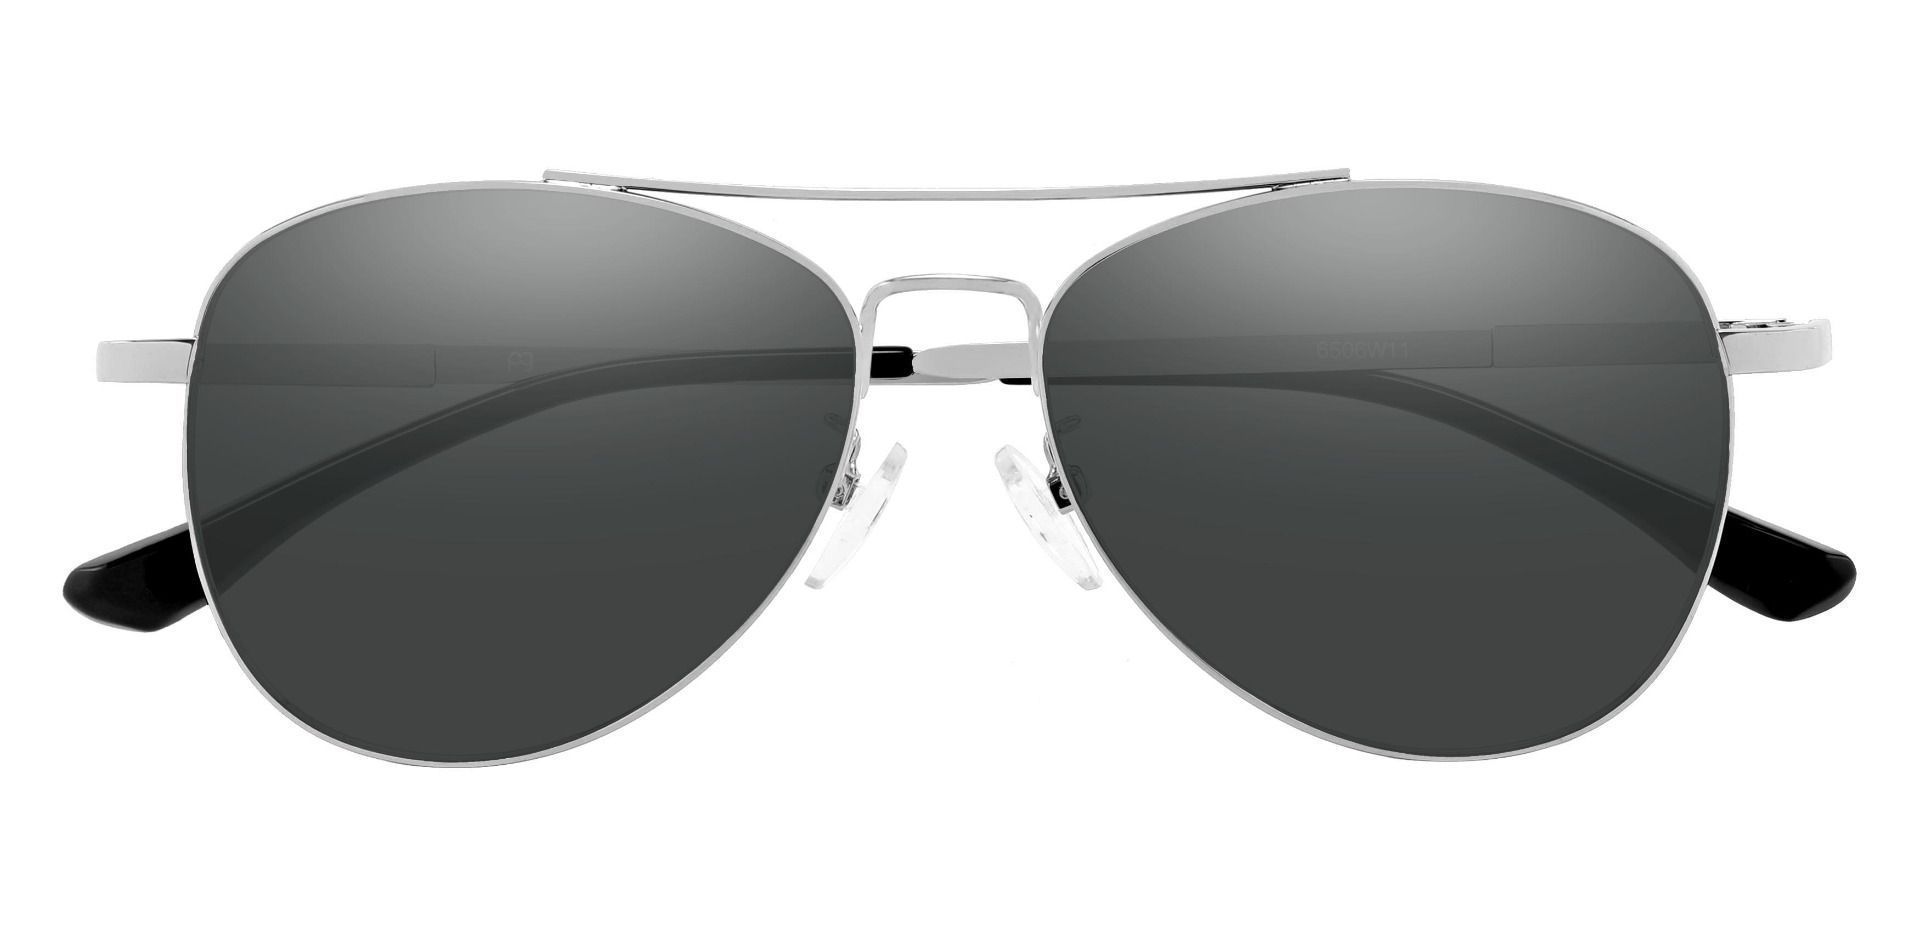 Sterling Aviator Silver Prescription Sunglasses | Women's Sunglasses ...